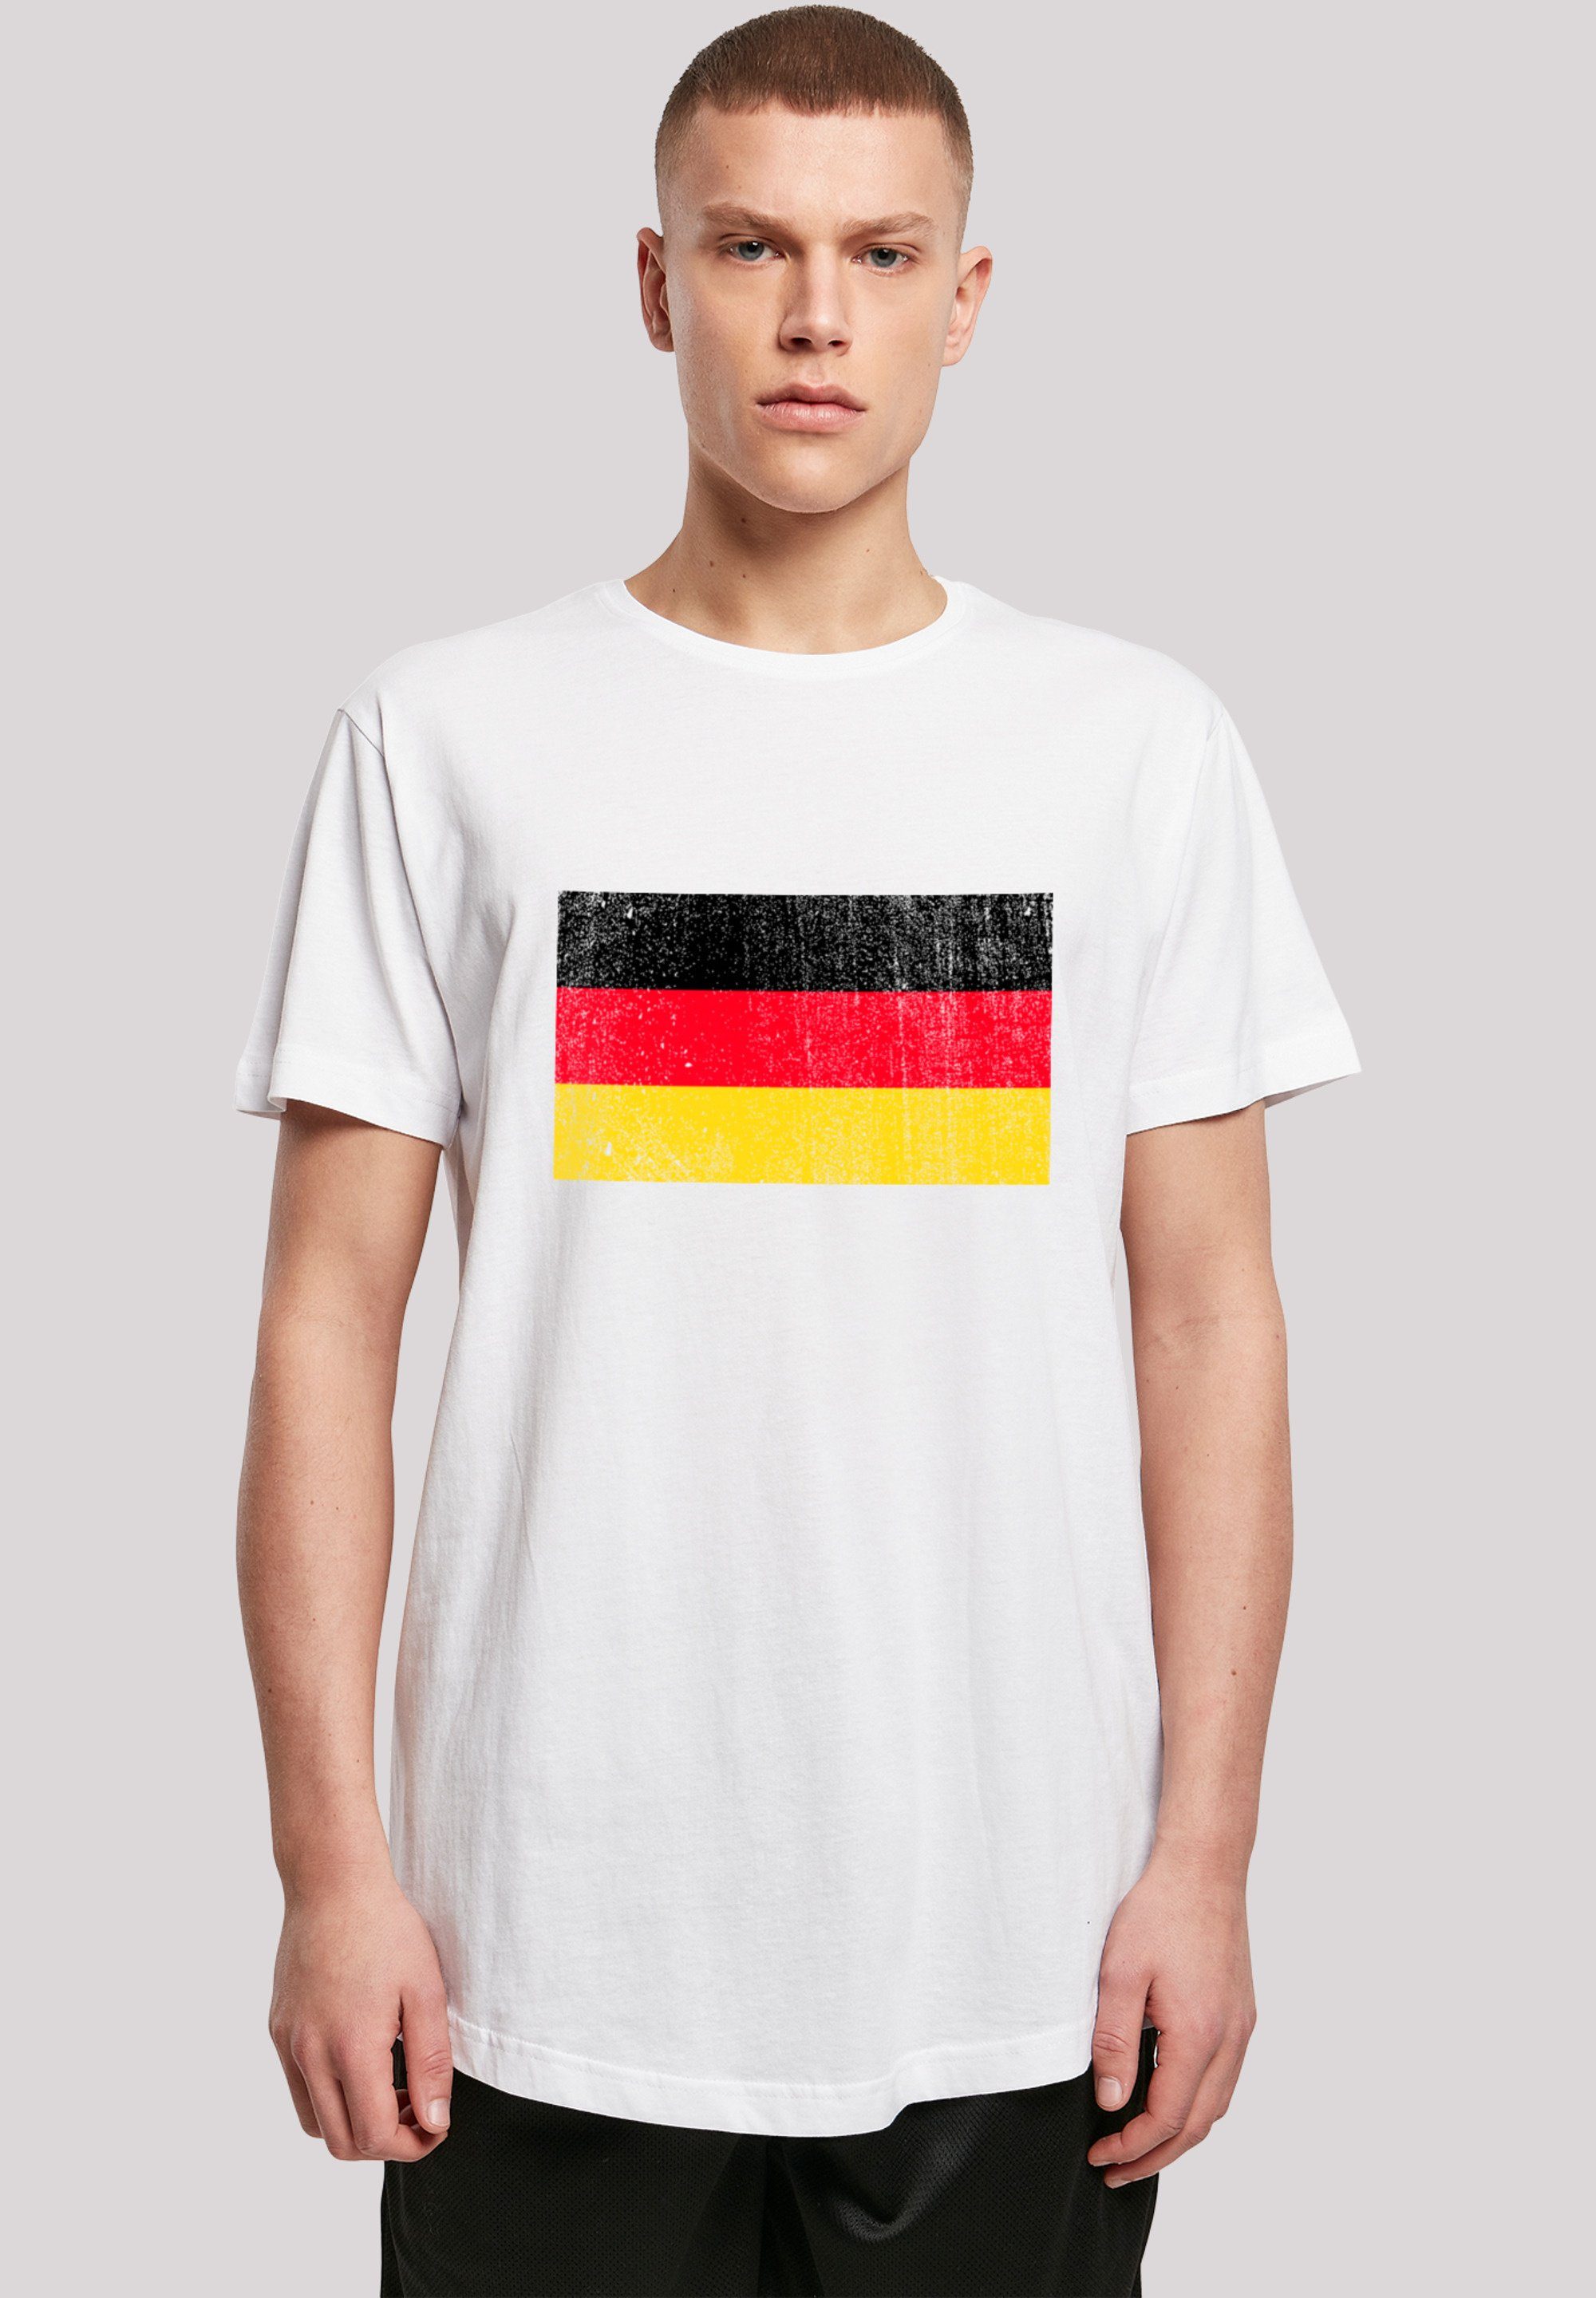 und T-Shirt cm Das trägt groß Print, ist Größe Deutschland Model distressed Germany Flagge F4NT4STIC 180 M